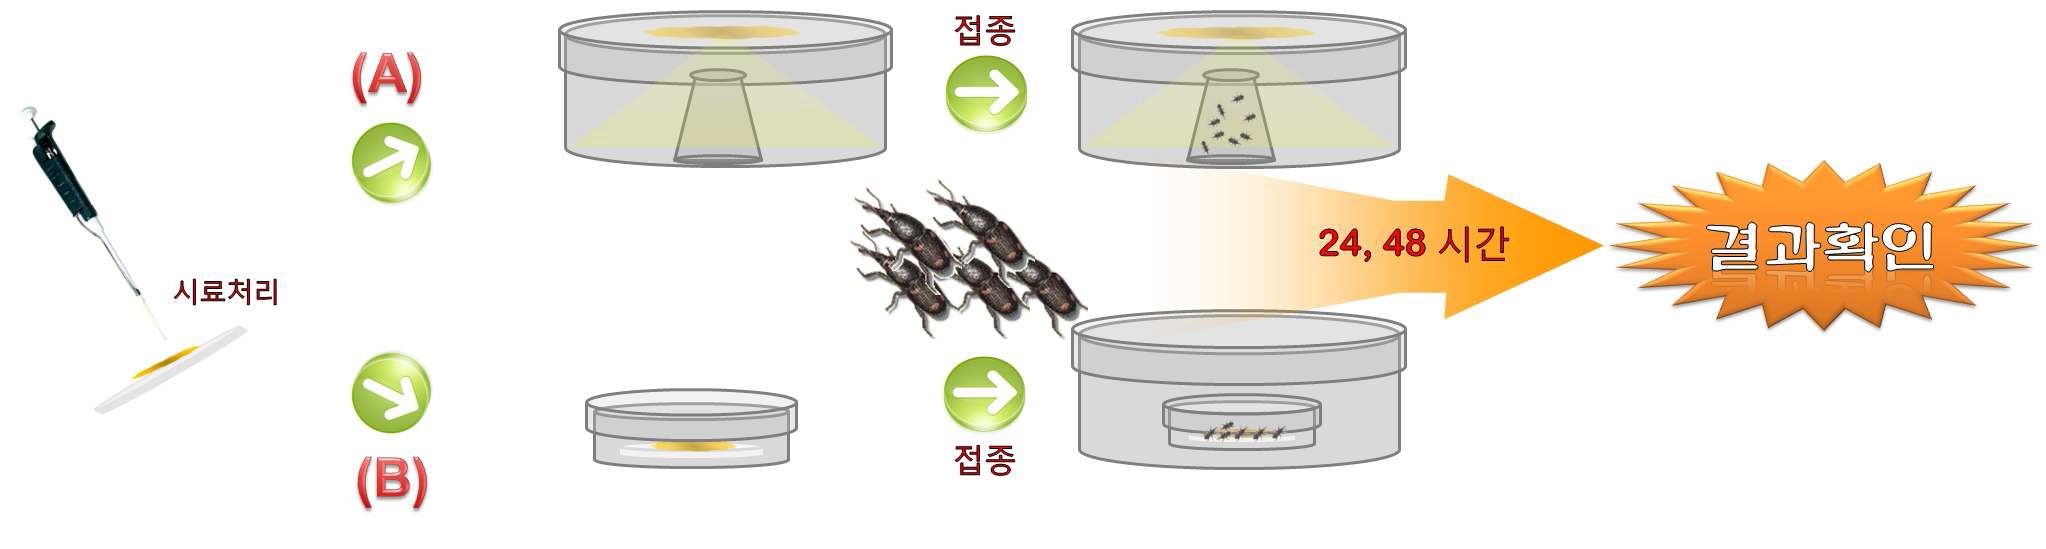 그림 3. 쌀바구미 및 어리쌀바구미 생물검정법 (A)훈증법, (B)직접접촉법